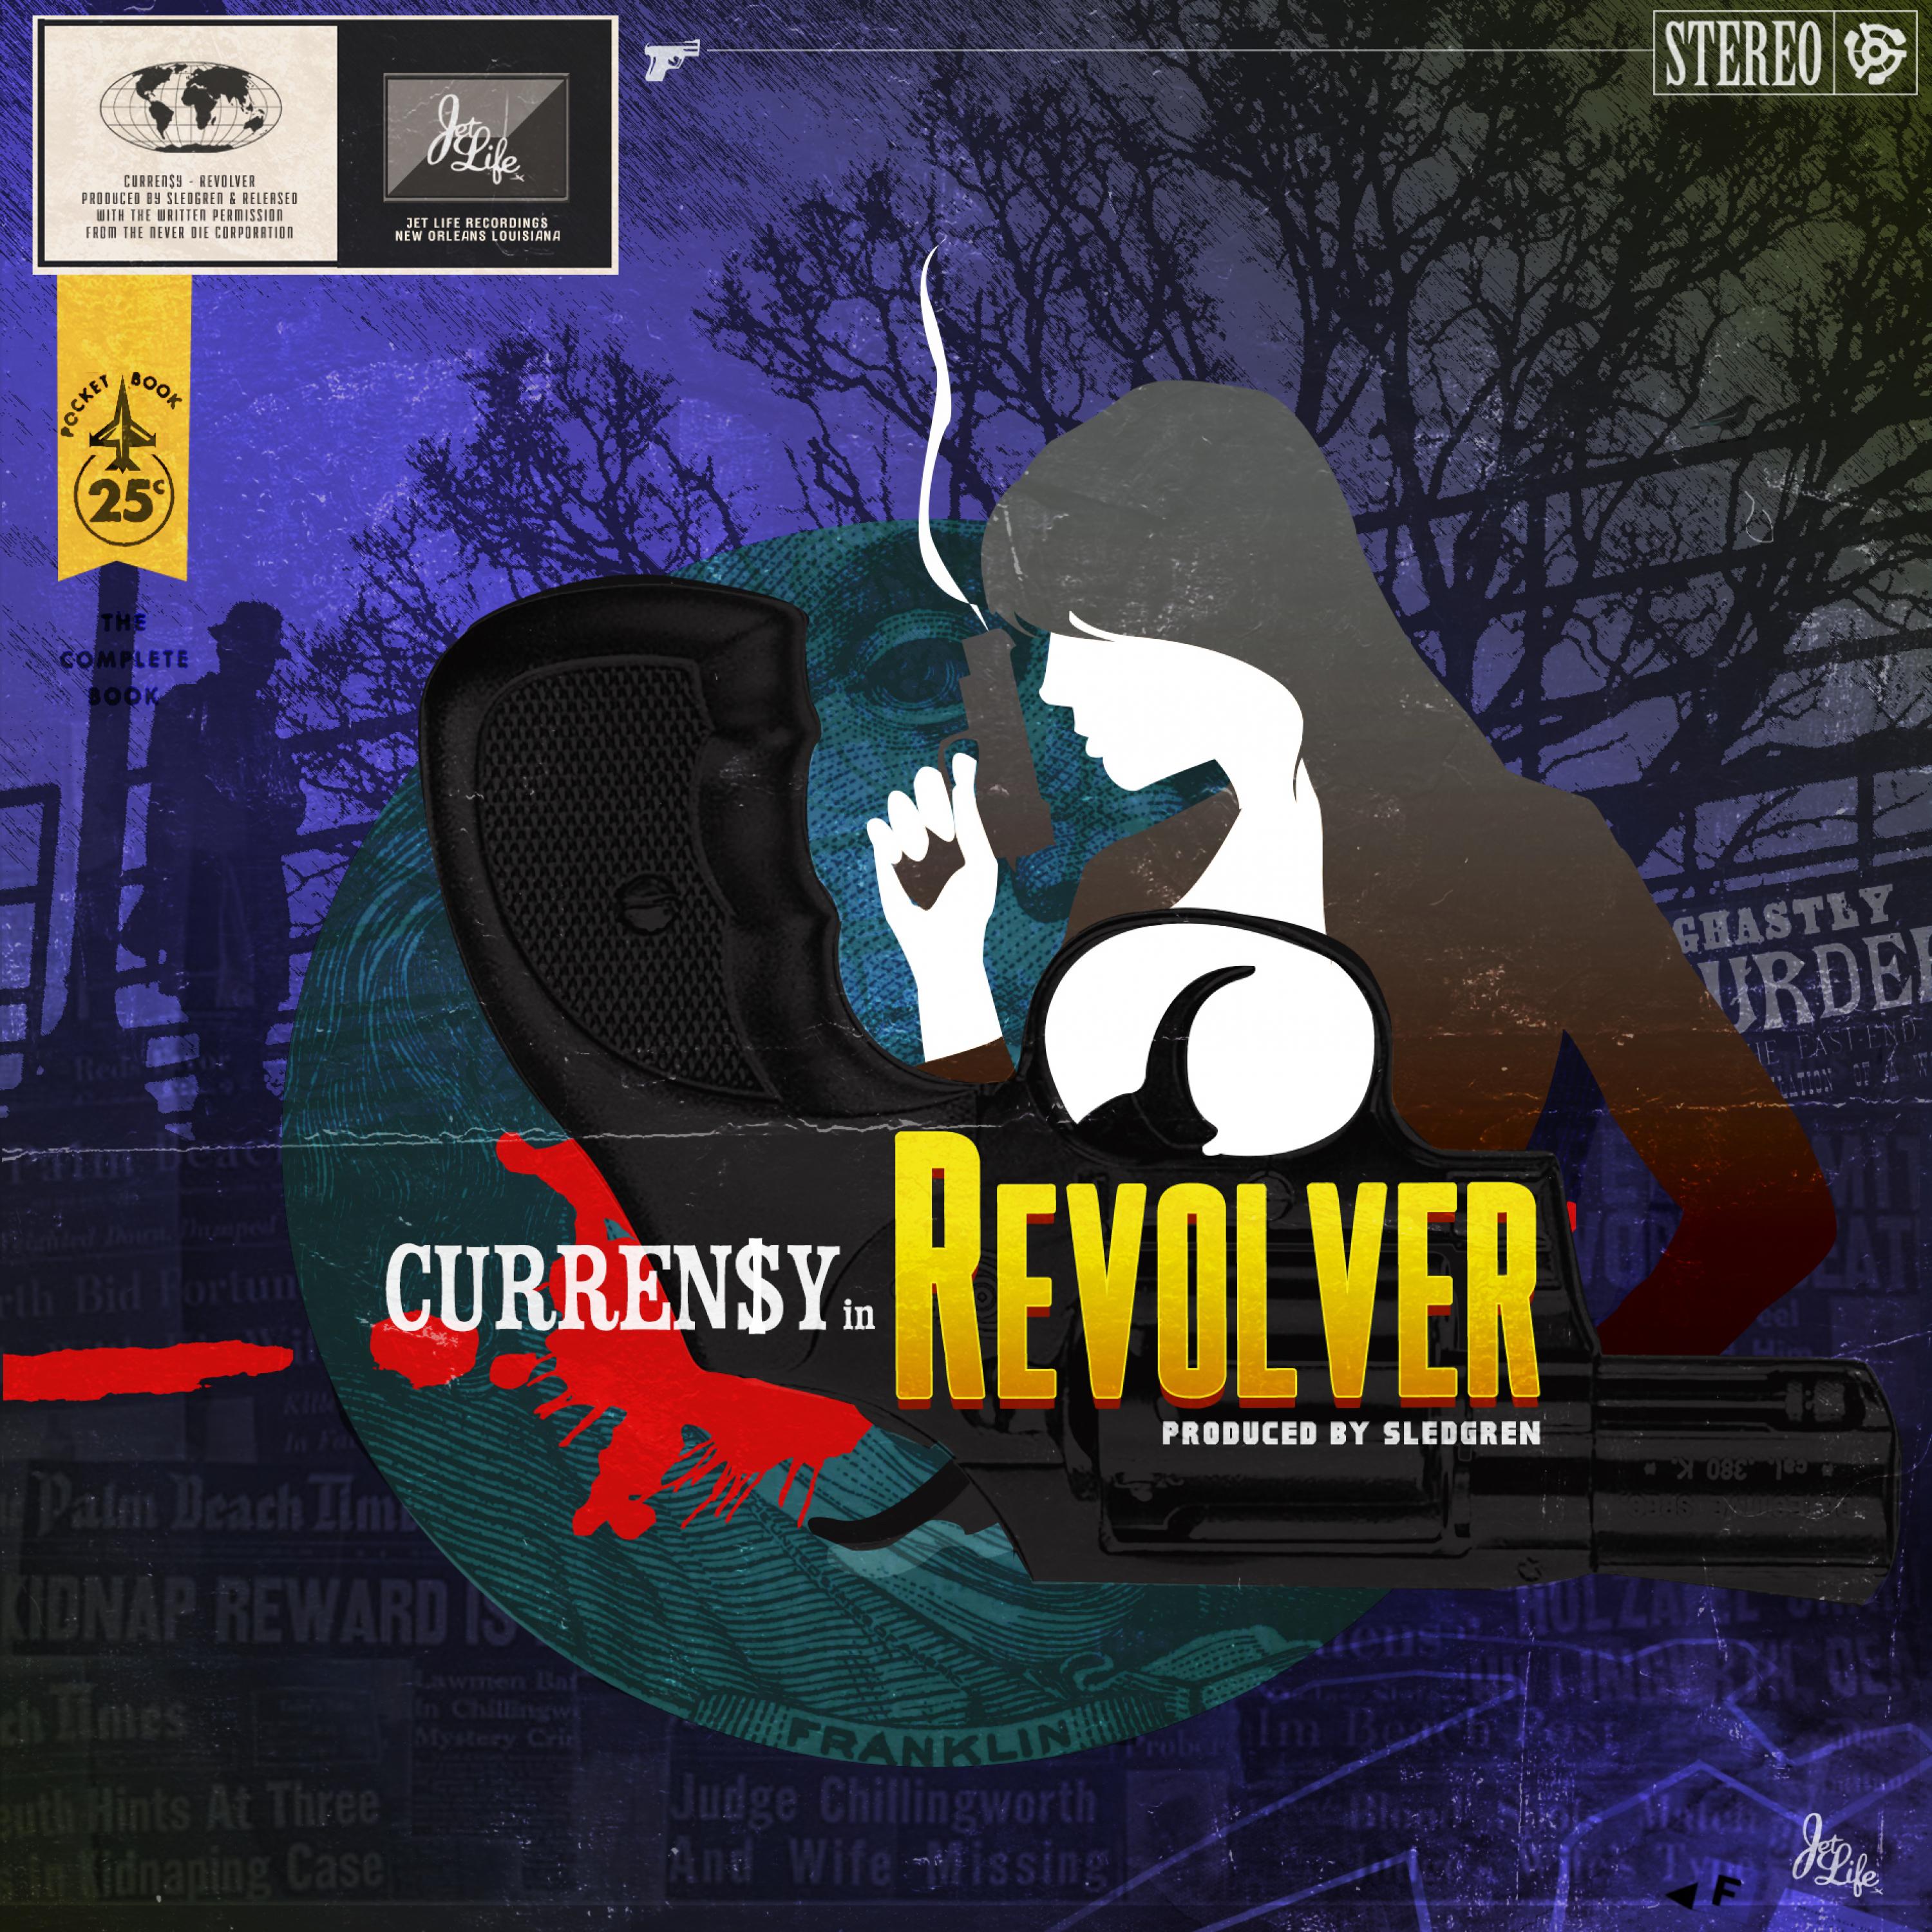 Revolver (Original Short Film Soundtrack) - EP